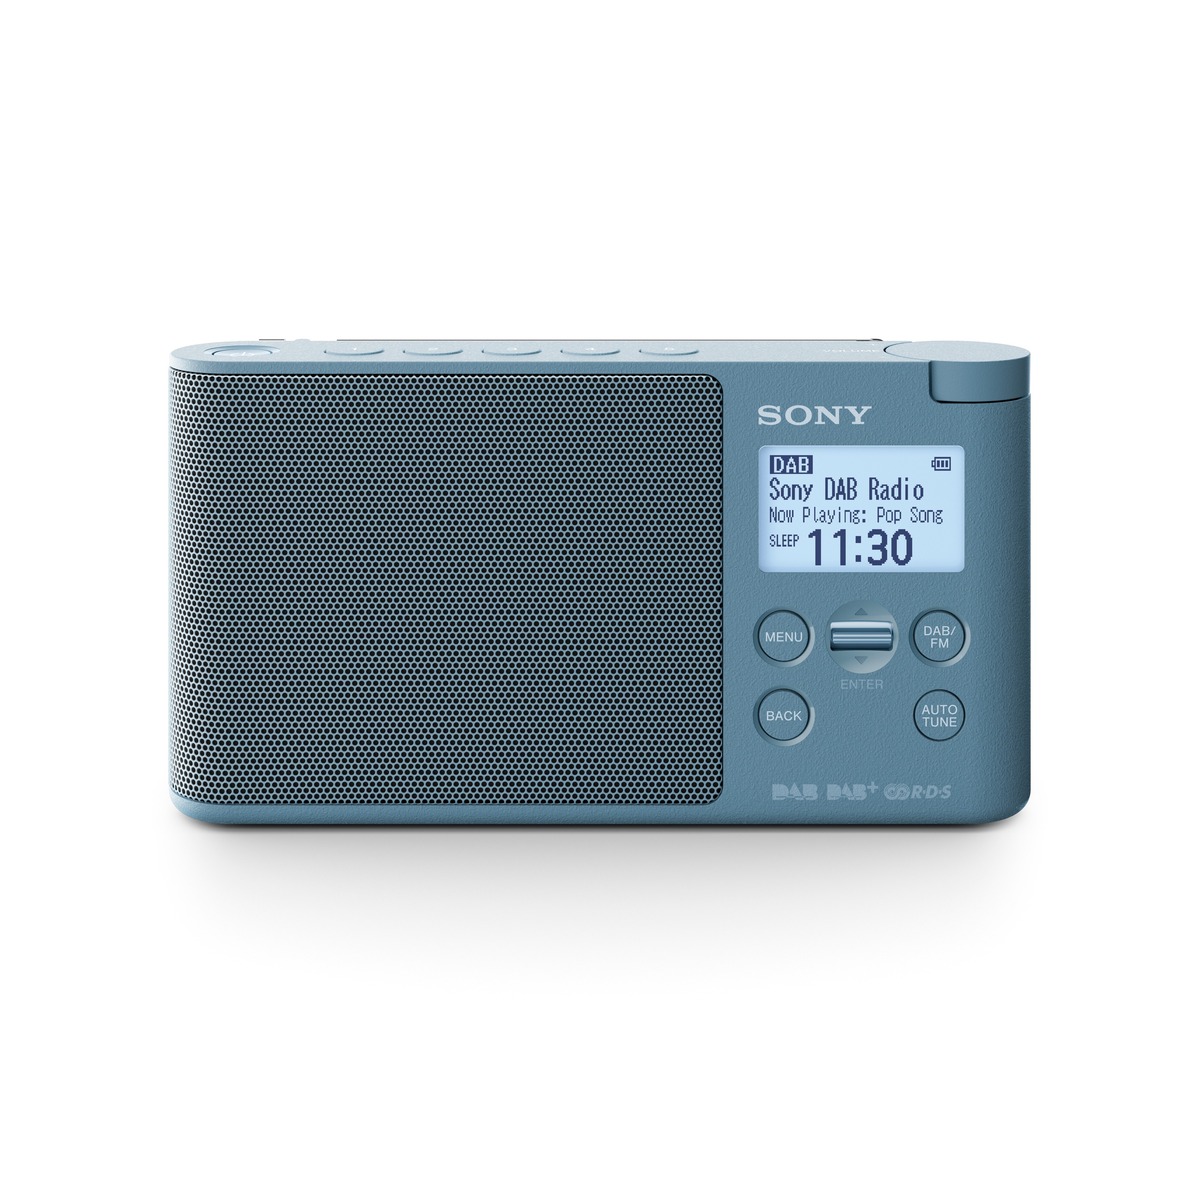 Sony radiopřijímač XDRS41DL.EU8 DAB tuner modrý